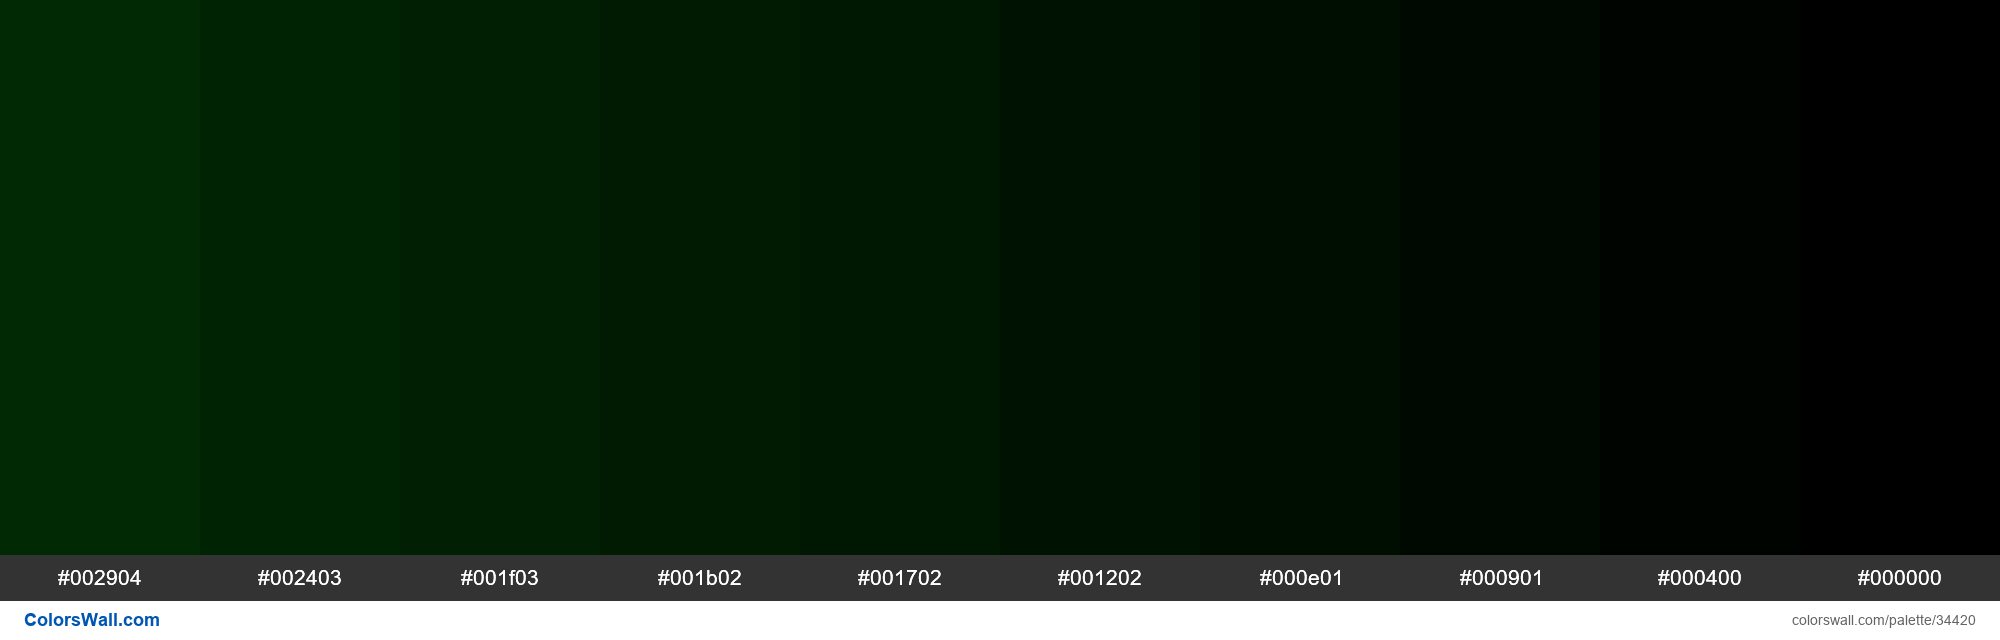 Код темно зеленого цвета. Зеленый 008000. Оттенки зеленого hex. Зеленый цвет RGB. Зелёный тёмный цвет RGB.